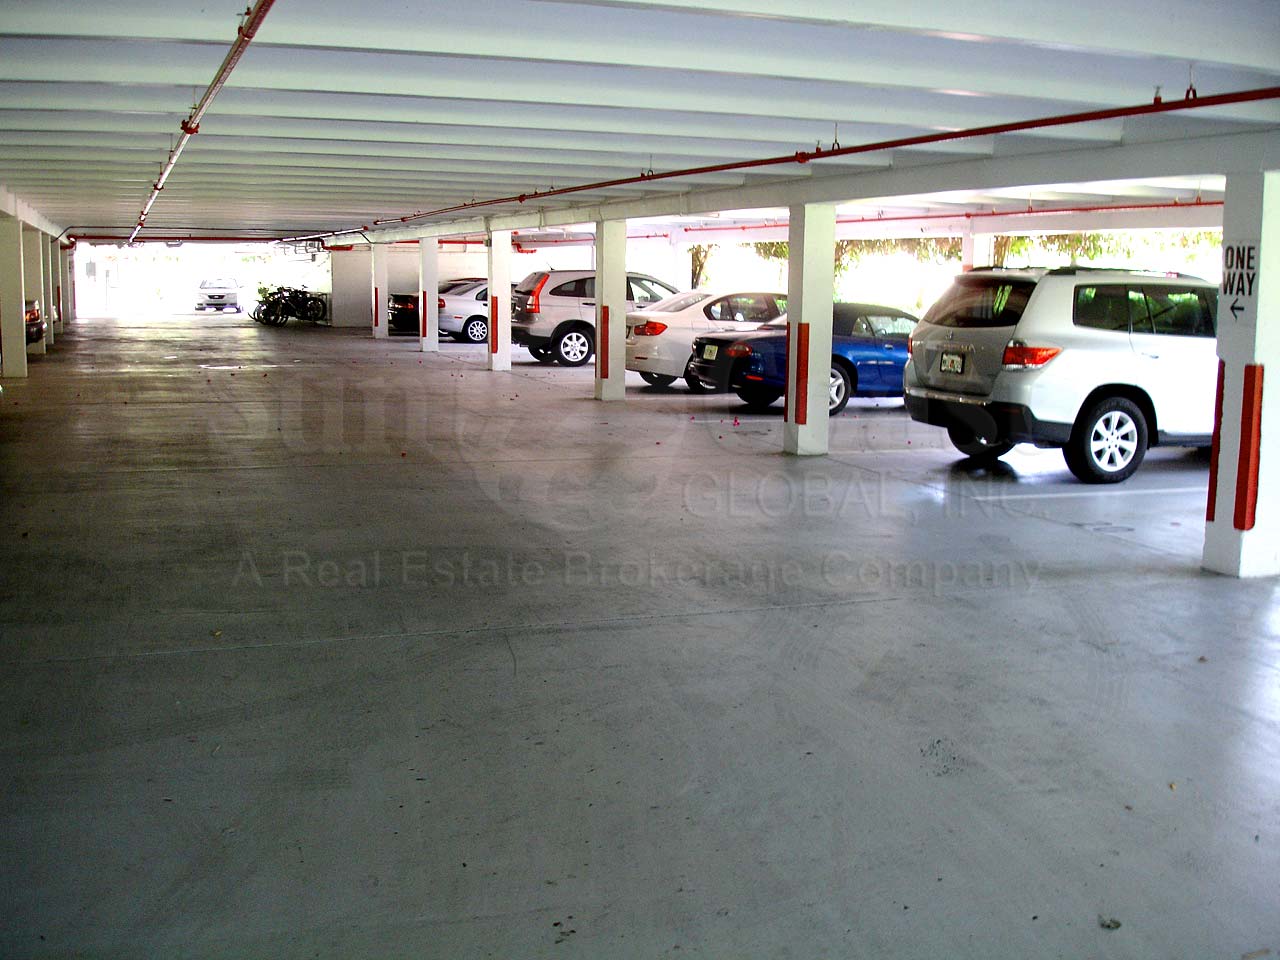 St Maarten Sub-Building Parking